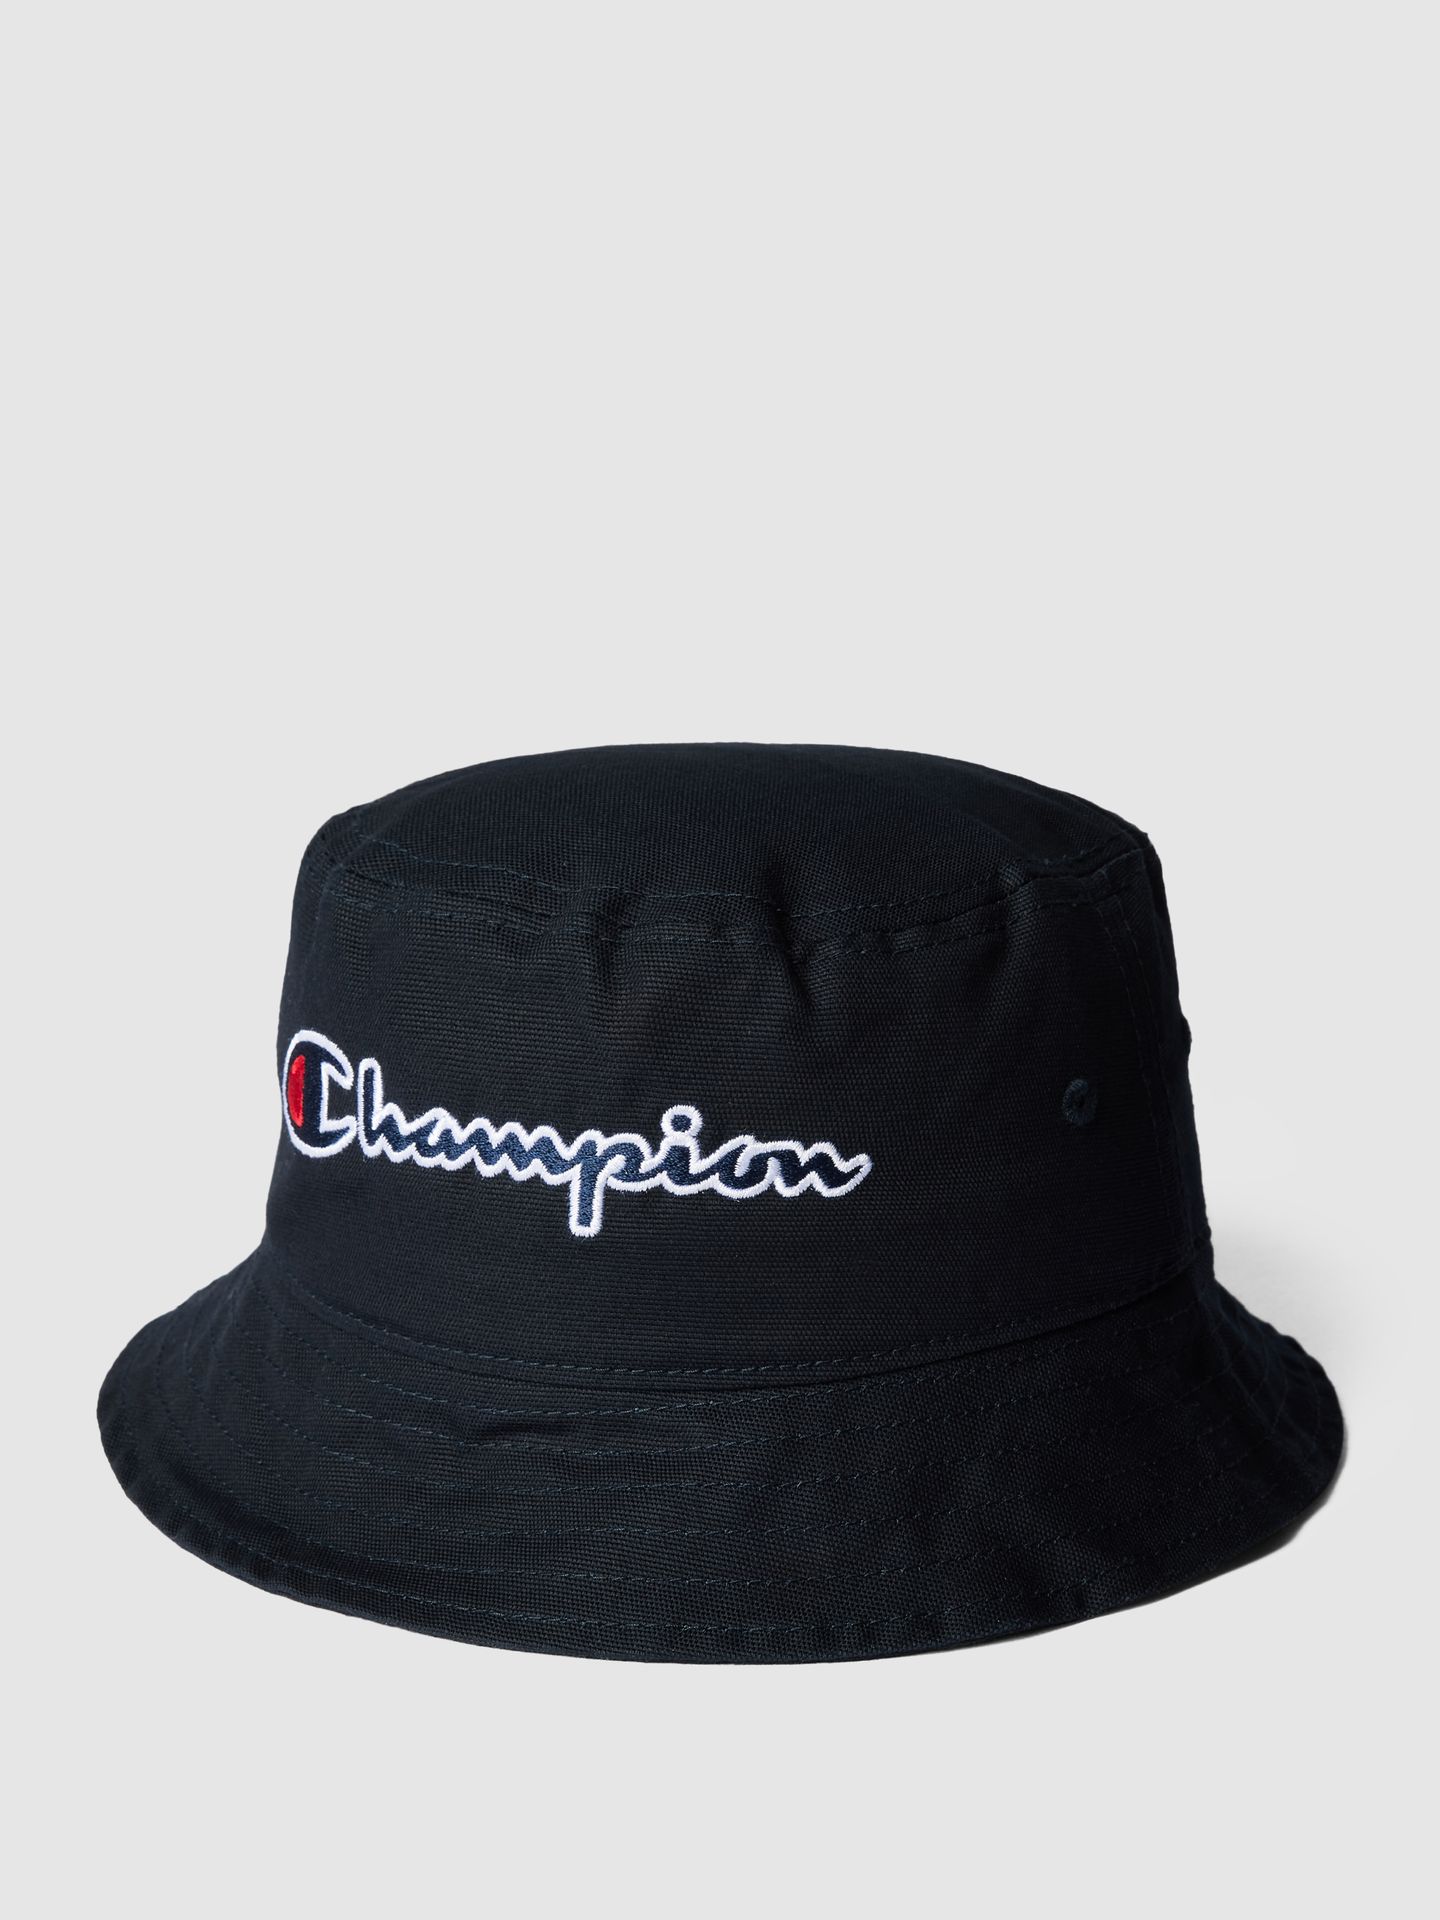 Czapka typu bucket hat z napisem z logo